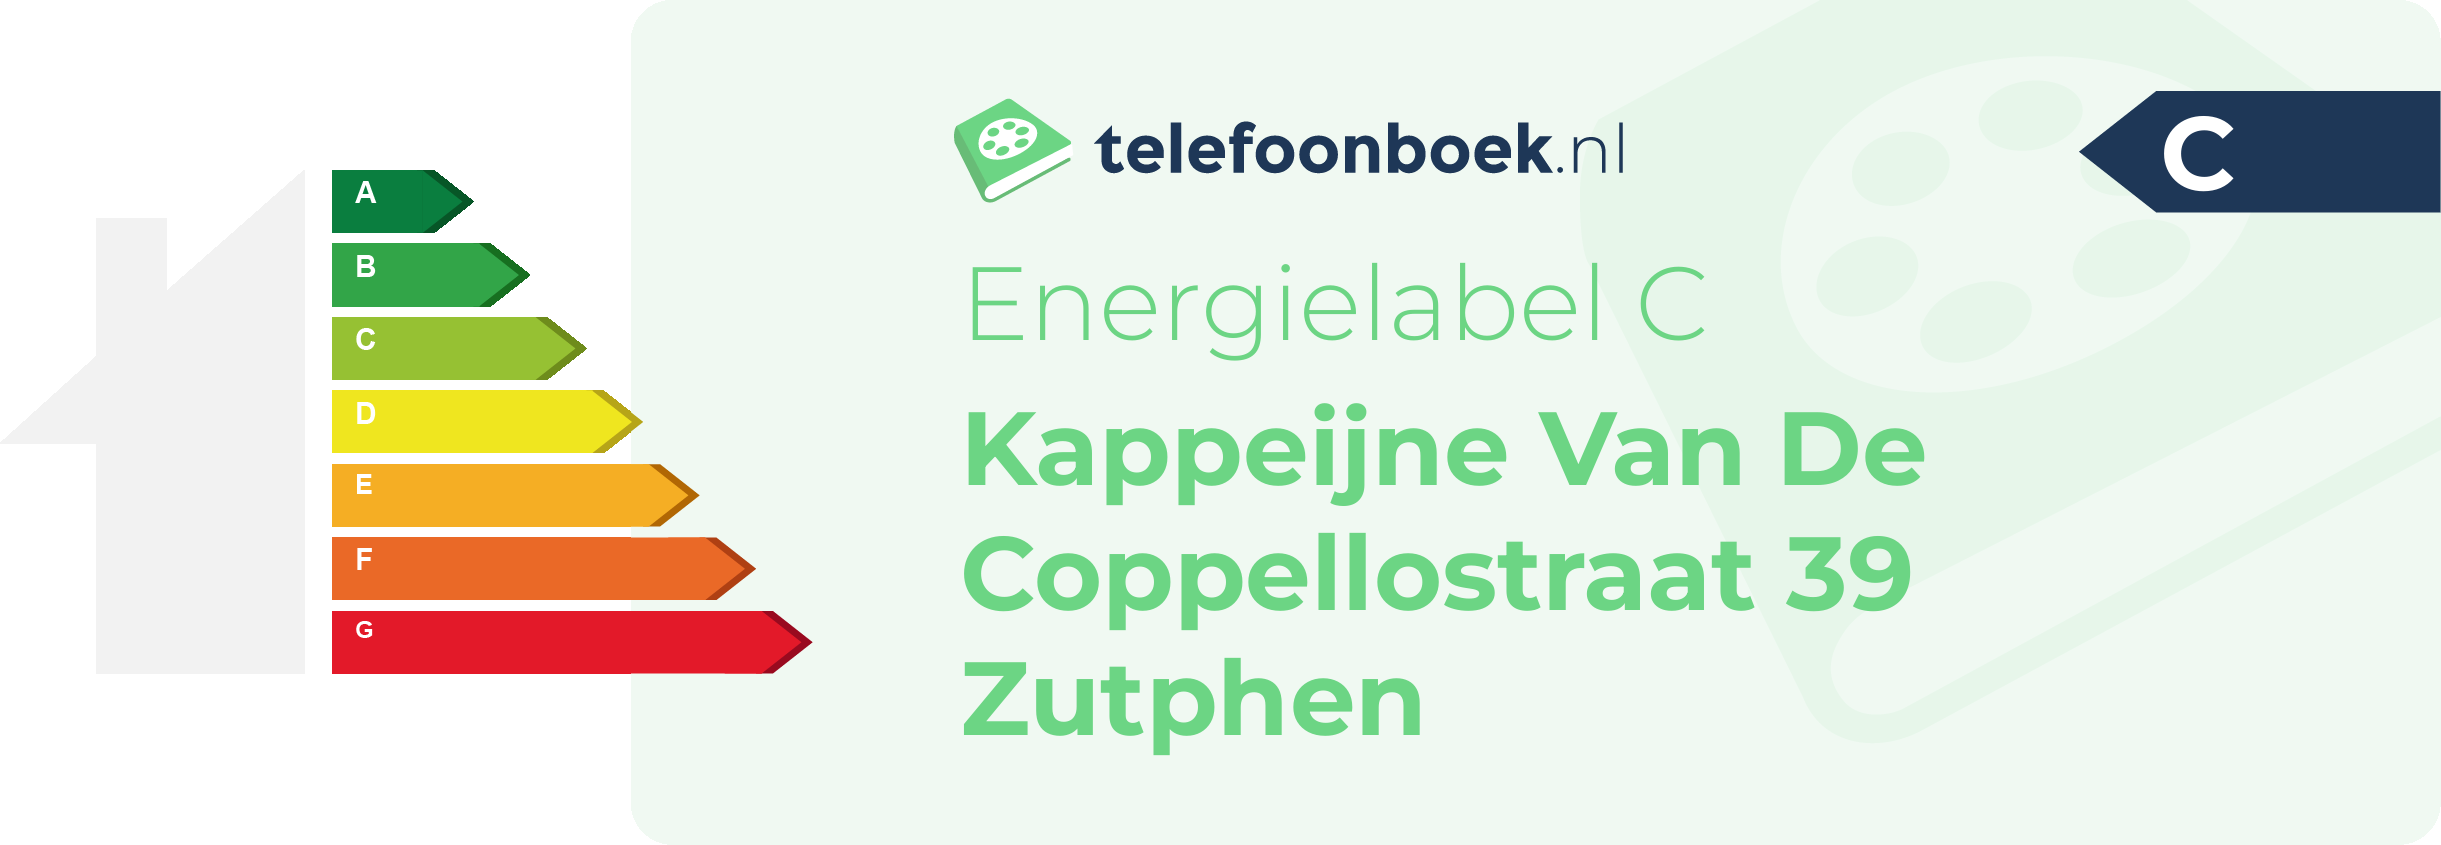 Energielabel Kappeijne Van De Coppellostraat 39 Zutphen